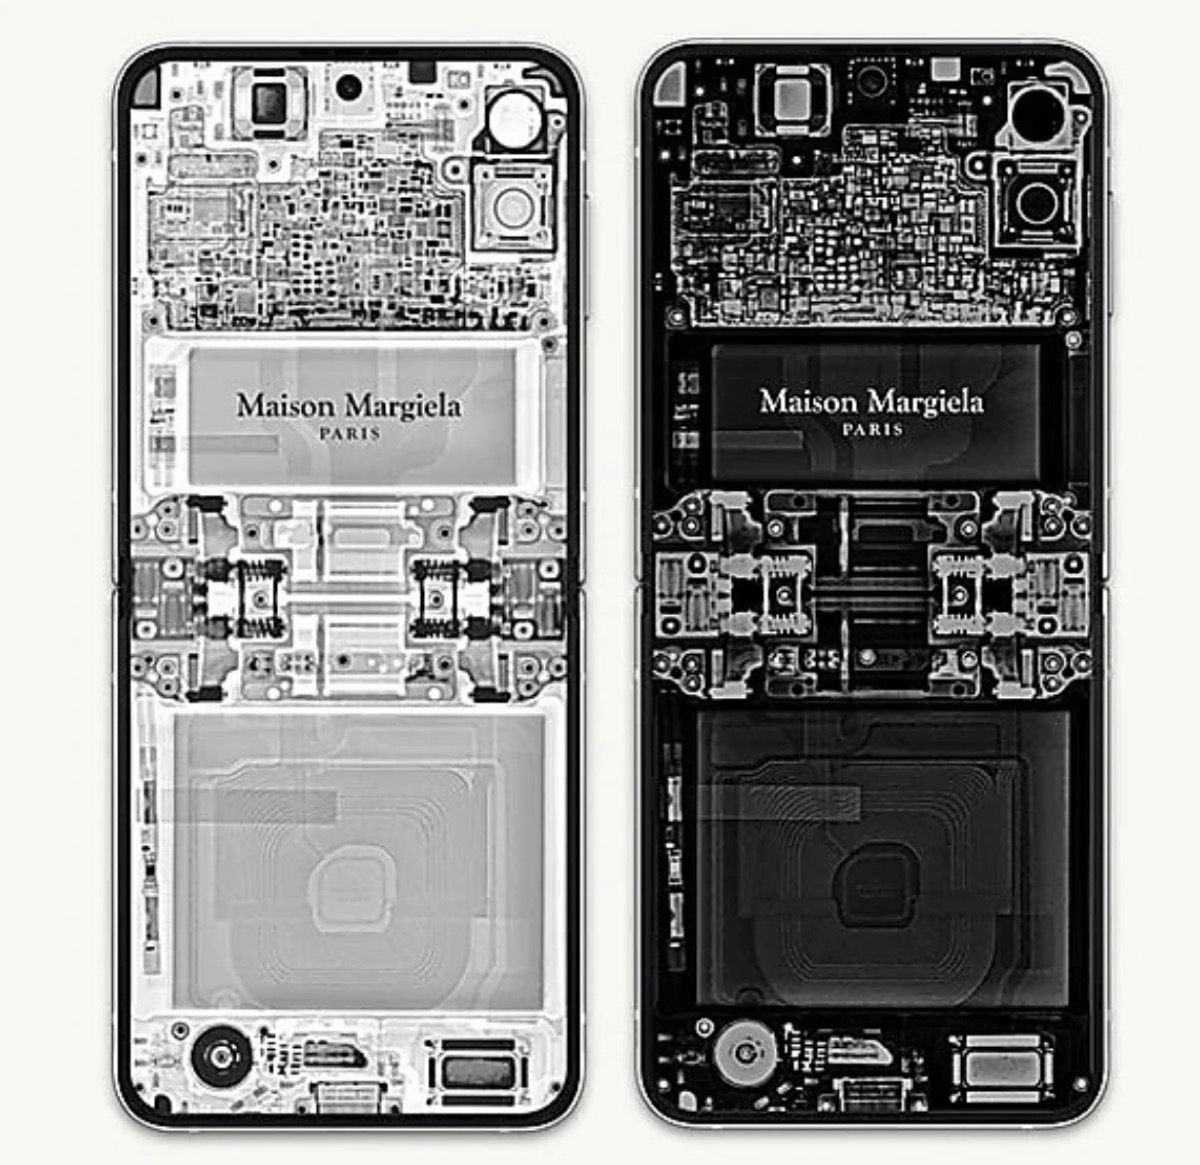 Samsung Galaxy × Maison Margiela 『Galaxy Z Flip 4』が12月1日に 